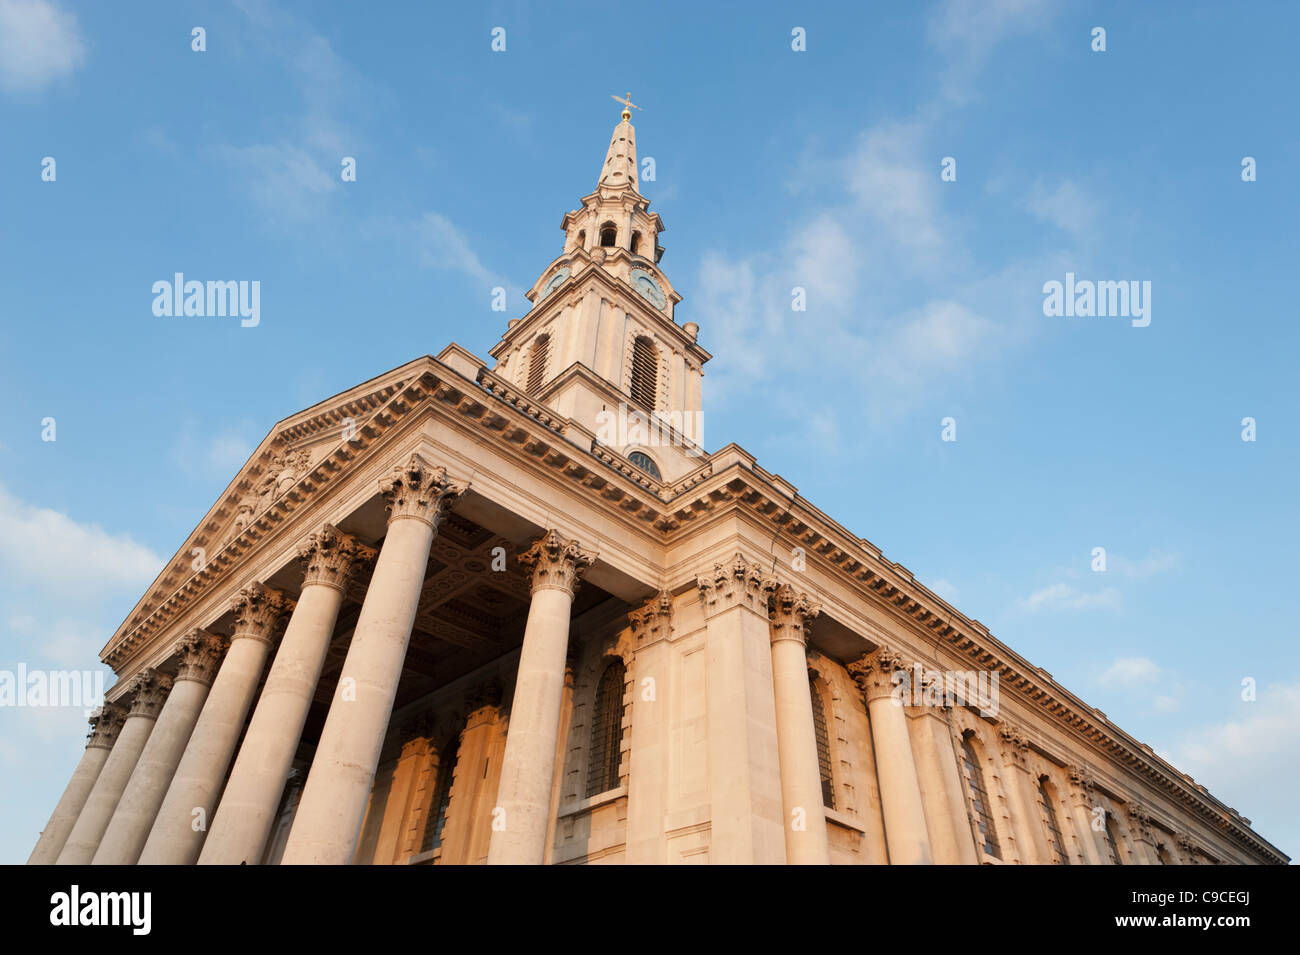 L'église de Saint Martins dans les champs, au coin de Trafalgar Square, au centre de Londres, Angleterre, Royaume-Uni. Banque D'Images